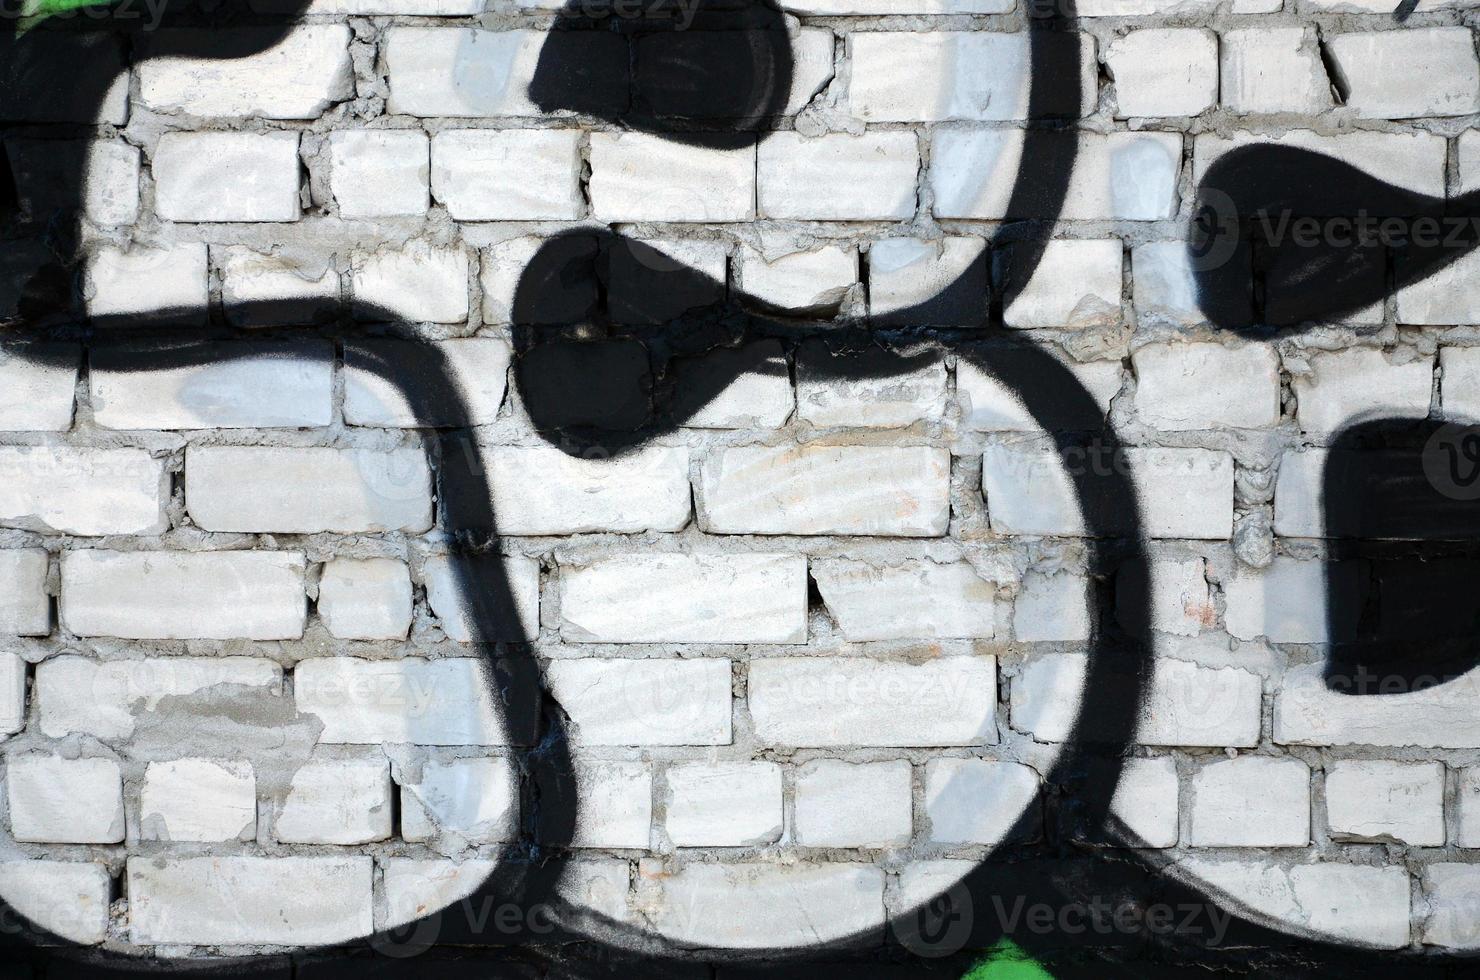 die alte mauer, bemalt in farbe graffiti zeichnung roter sprayfarben. Hintergrundbild zum Thema Zeichnen von Graffiti und Street Art foto